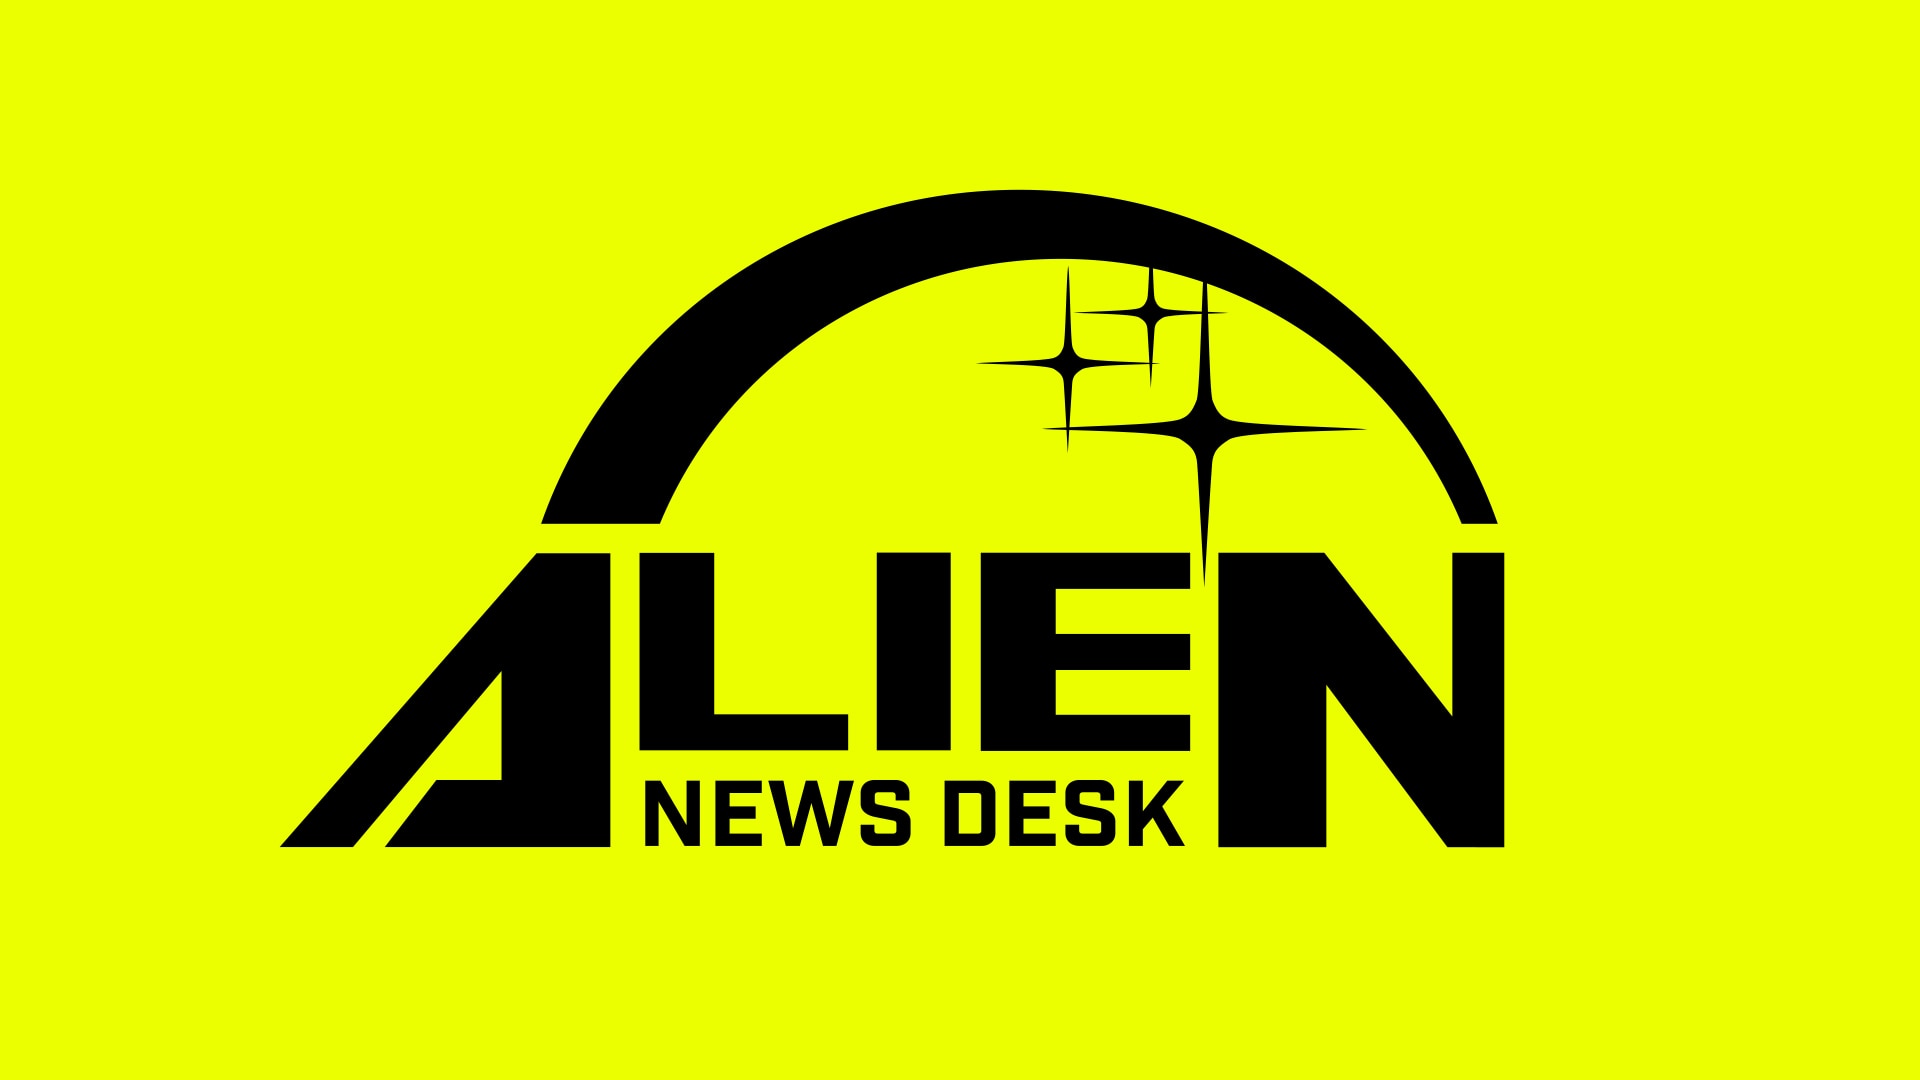 alien news desk